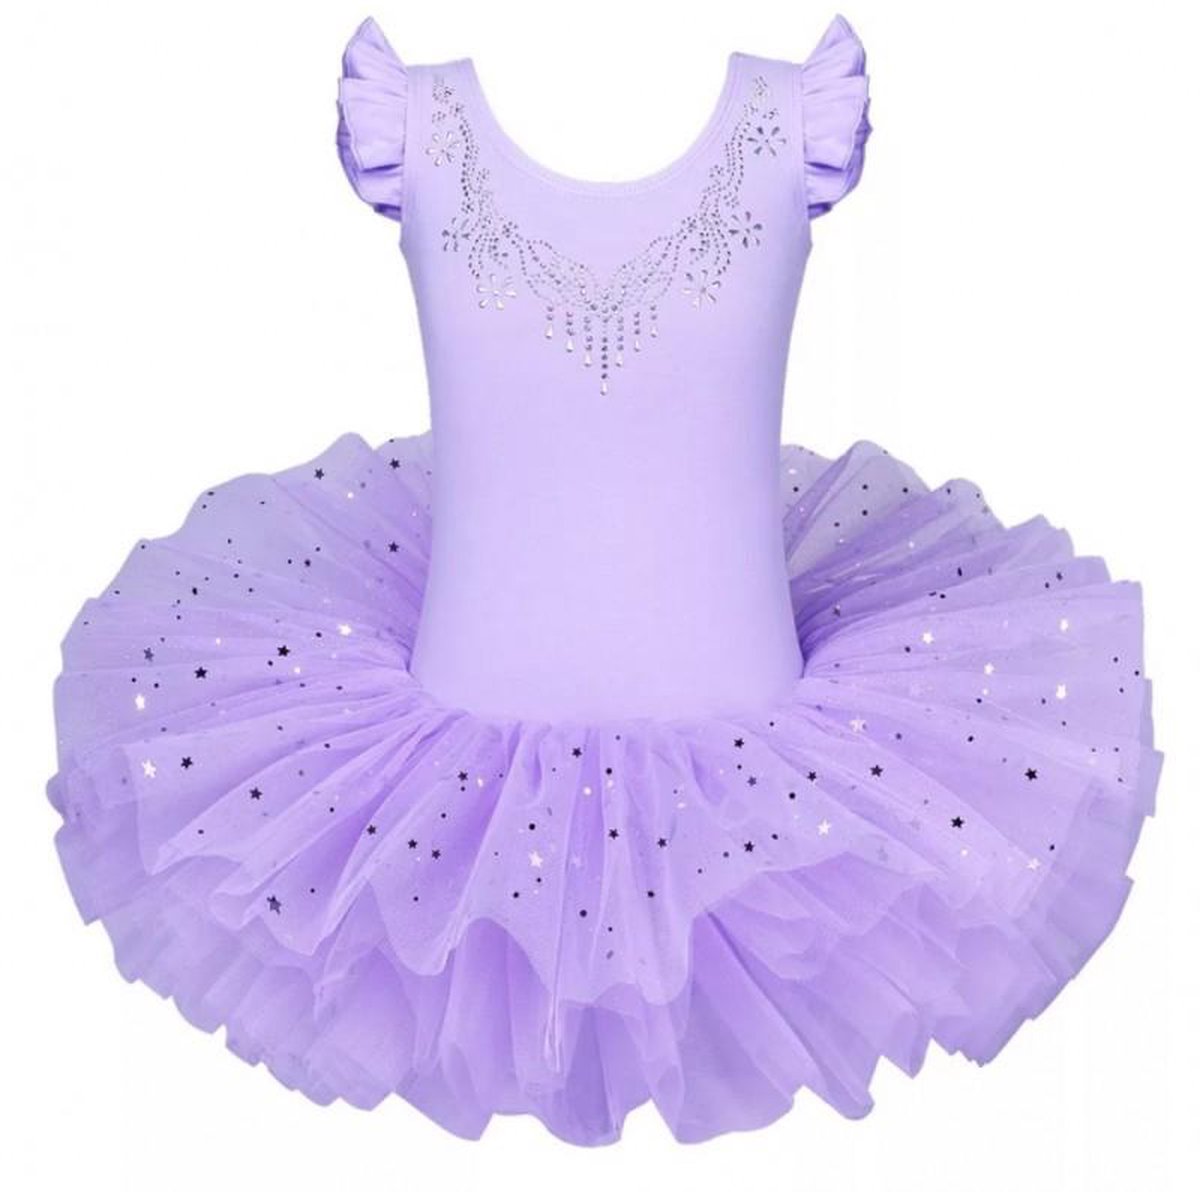 Balletpakje Ballerina + Tutu - lila - Ballet - maat 92-98 prinsessen tutu verkleed jurk meisje